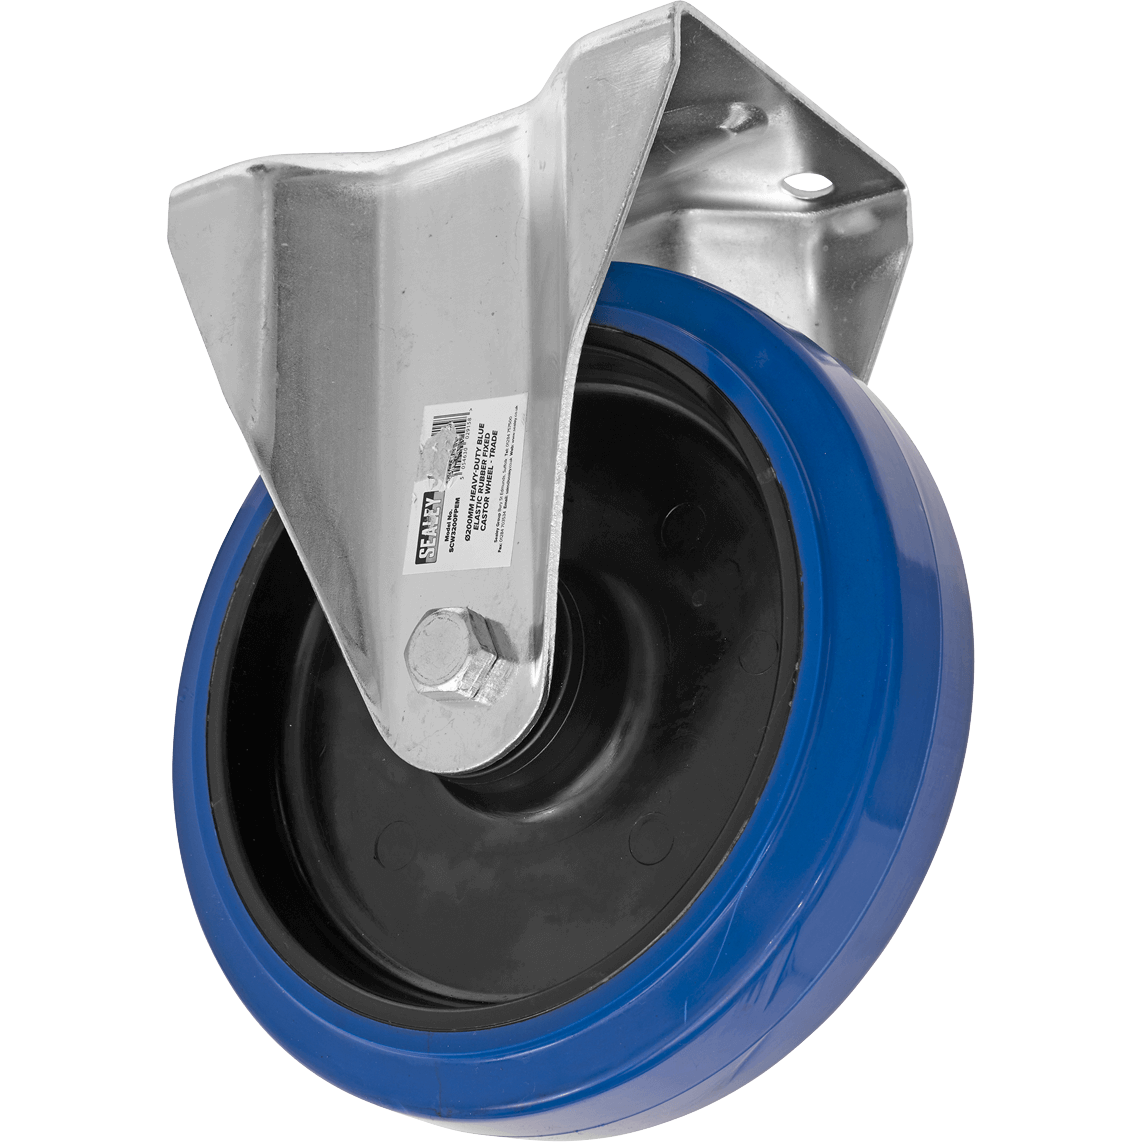 Sealey Heavy-Duty Blue Elastic Rubber Fixed Castor Wheel 200mm